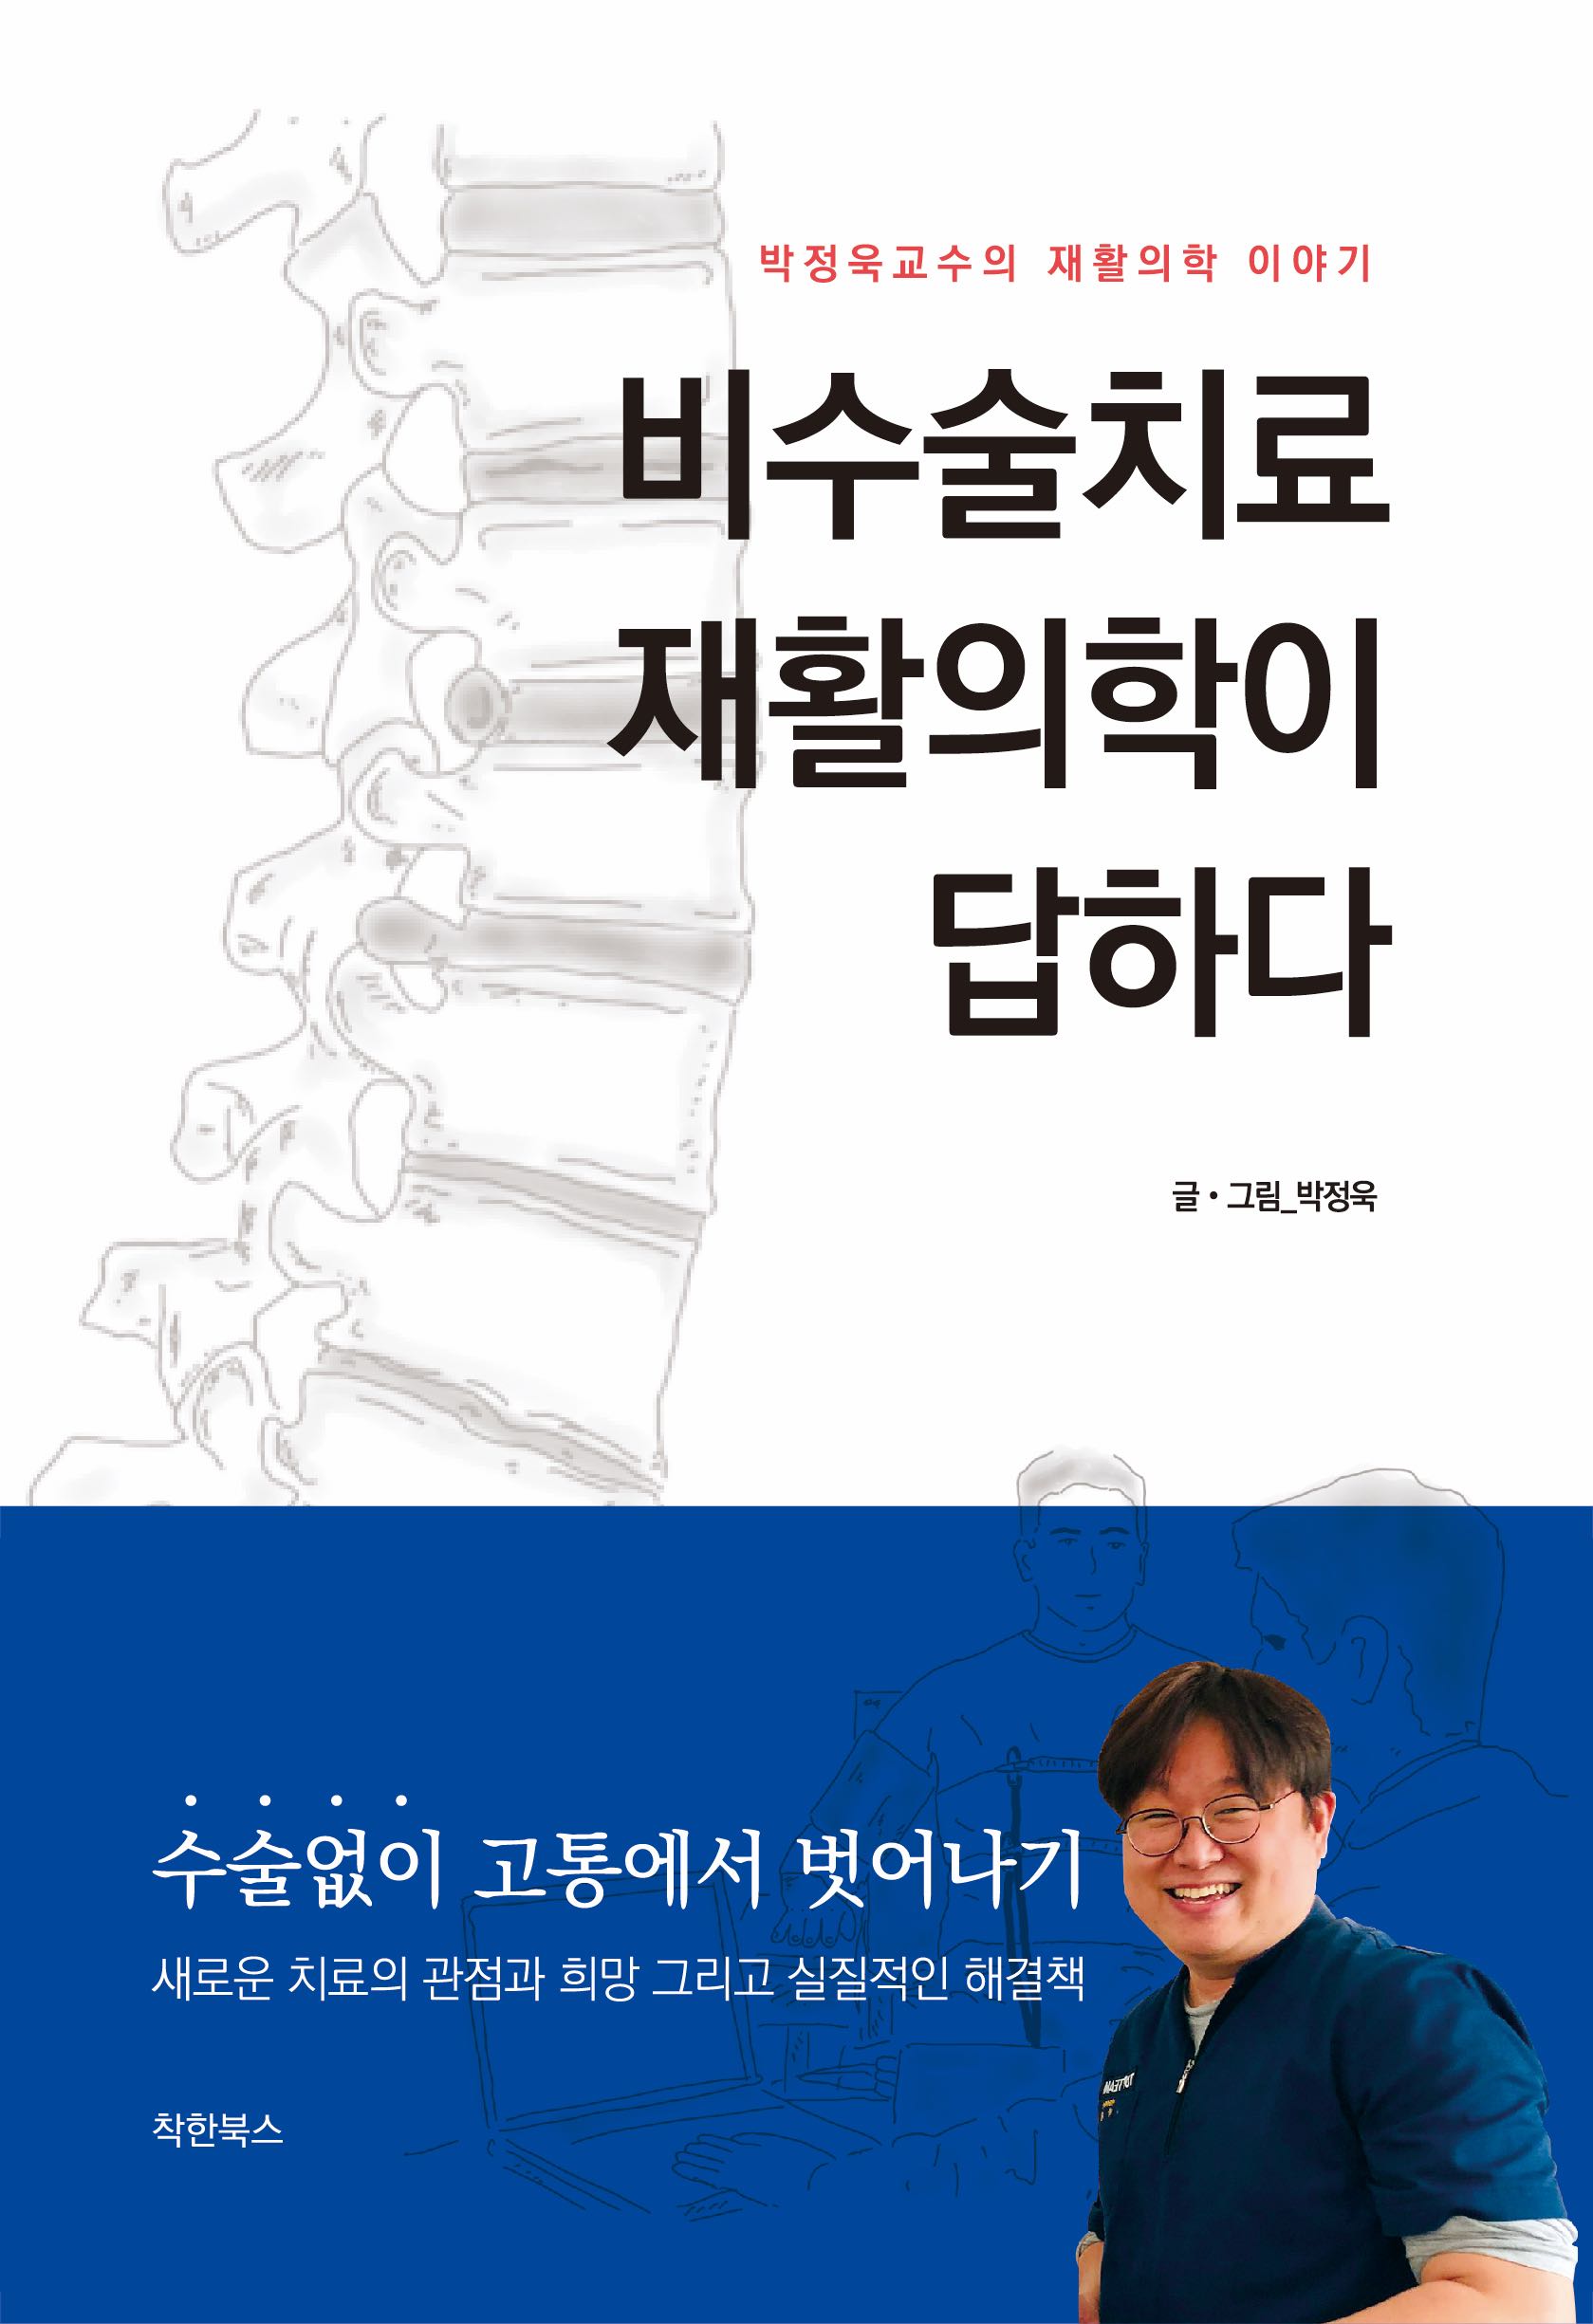 비수술치료, 재활의학이 답하다: 박정욱교수의 재활의학 이야기